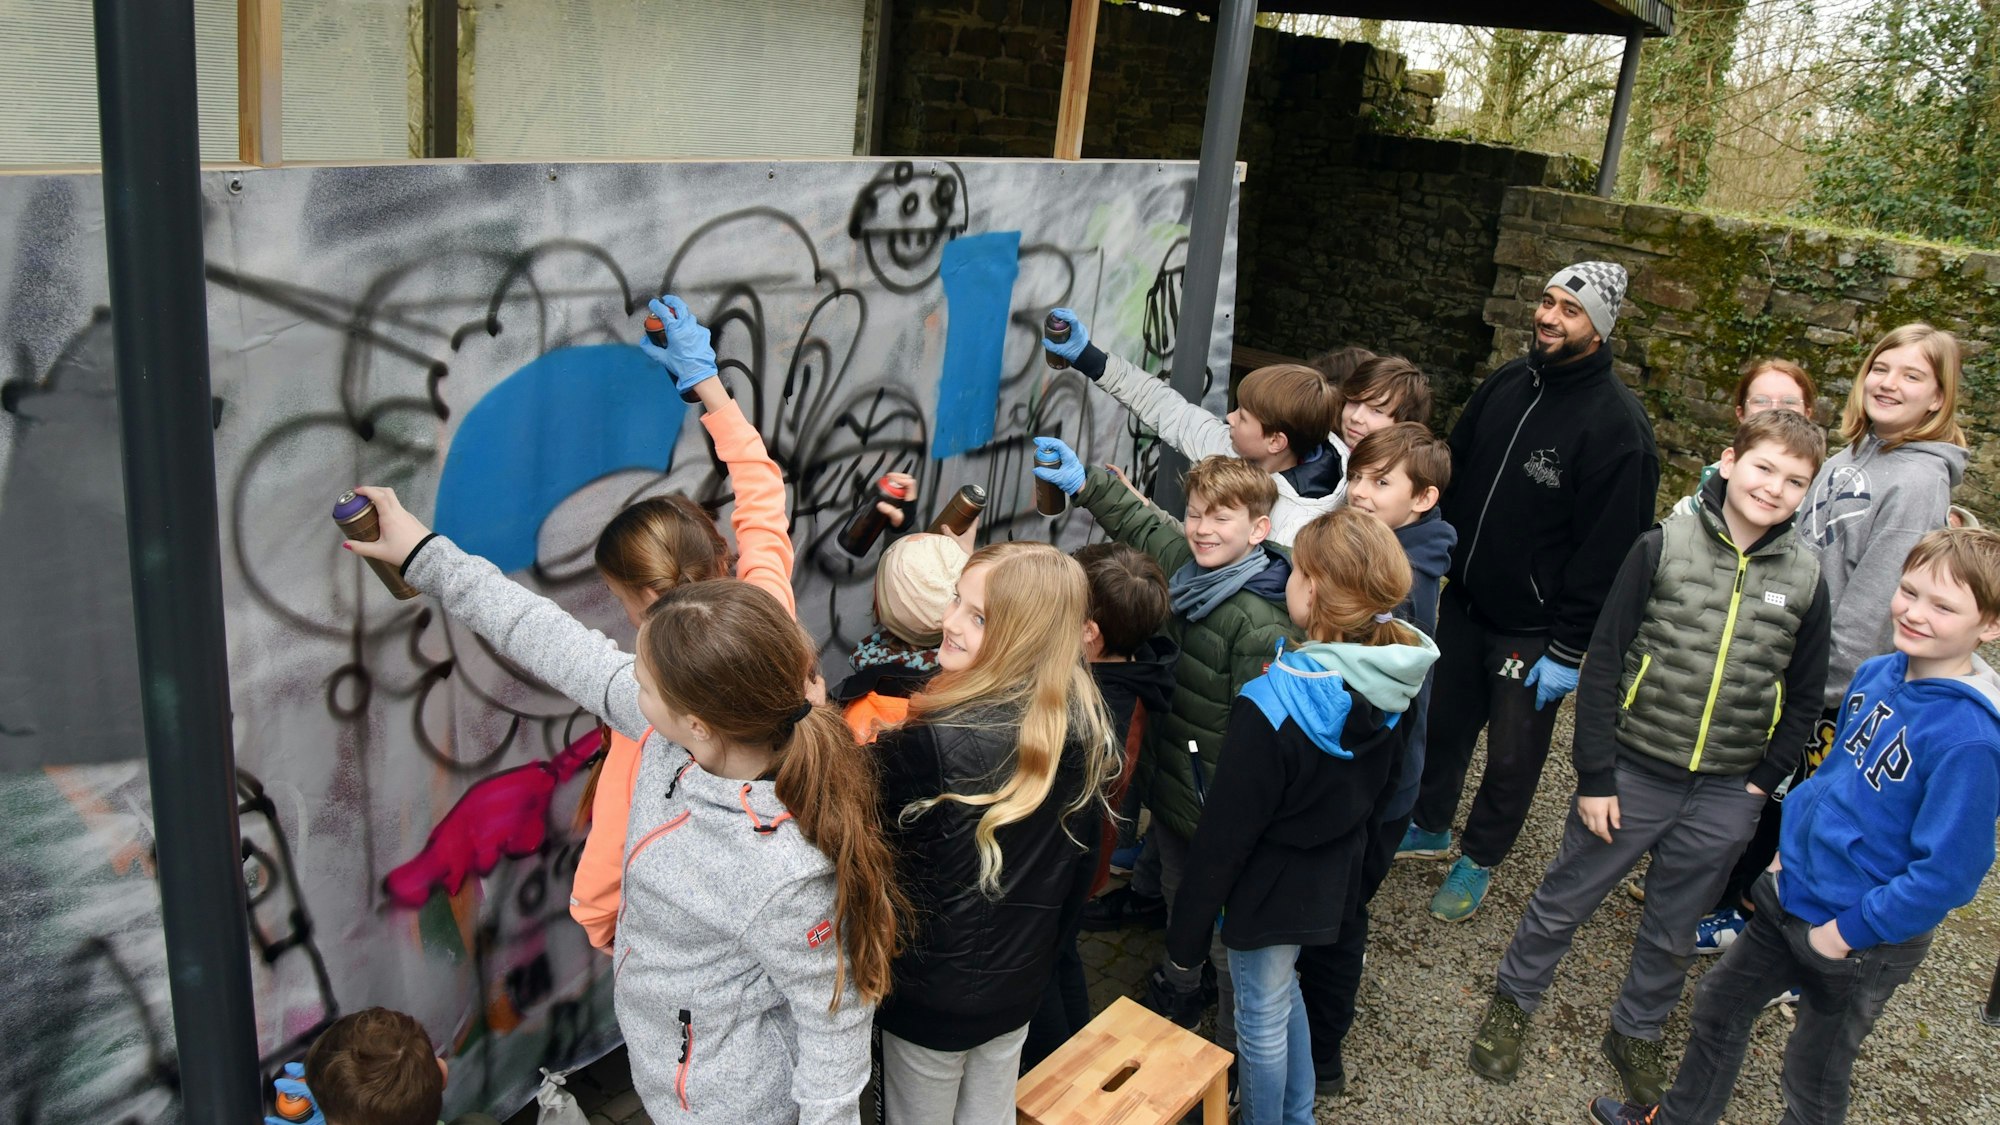 Mehrere Jugendliche sprühen gemeinsam ein Graffito auf eine Leinwand.